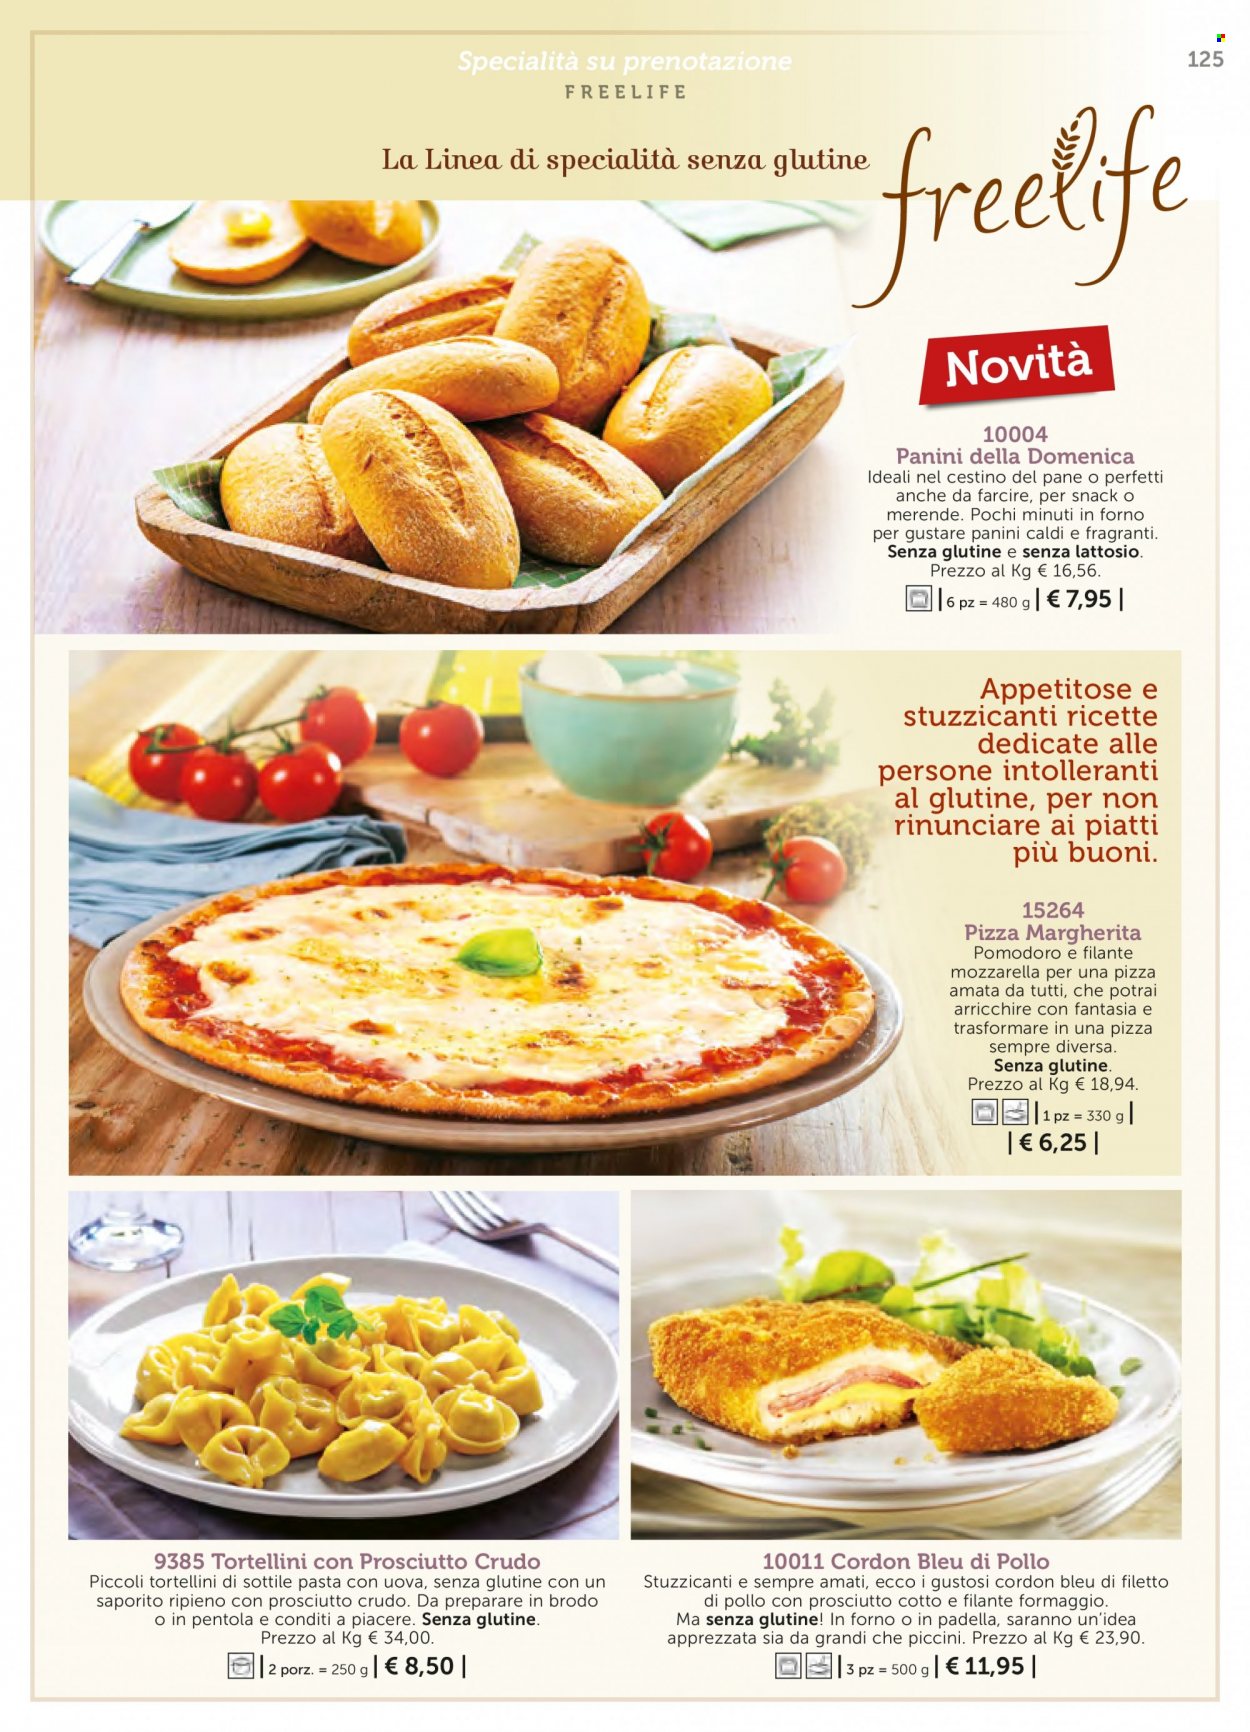 thumbnail - Volantino Bofrost - Prodotti in offerta - Cordon Bleu, pizza, pizza Margherita. Pagina 125.